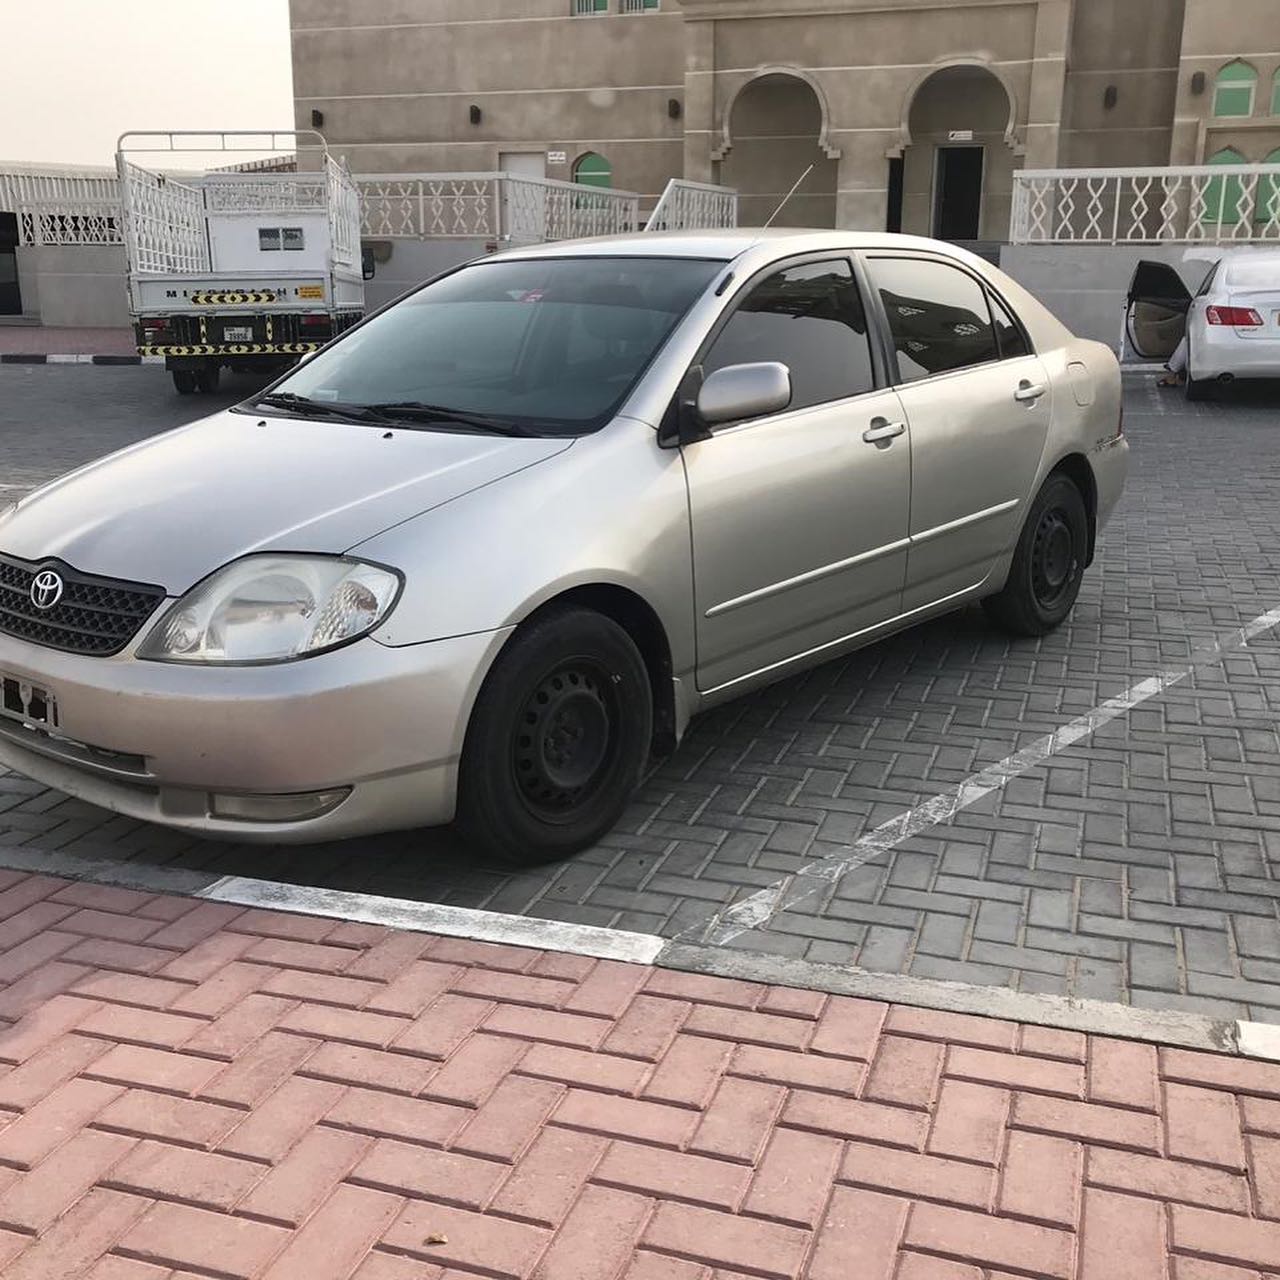 001 3 - Used Corolla price 5000 dirhams